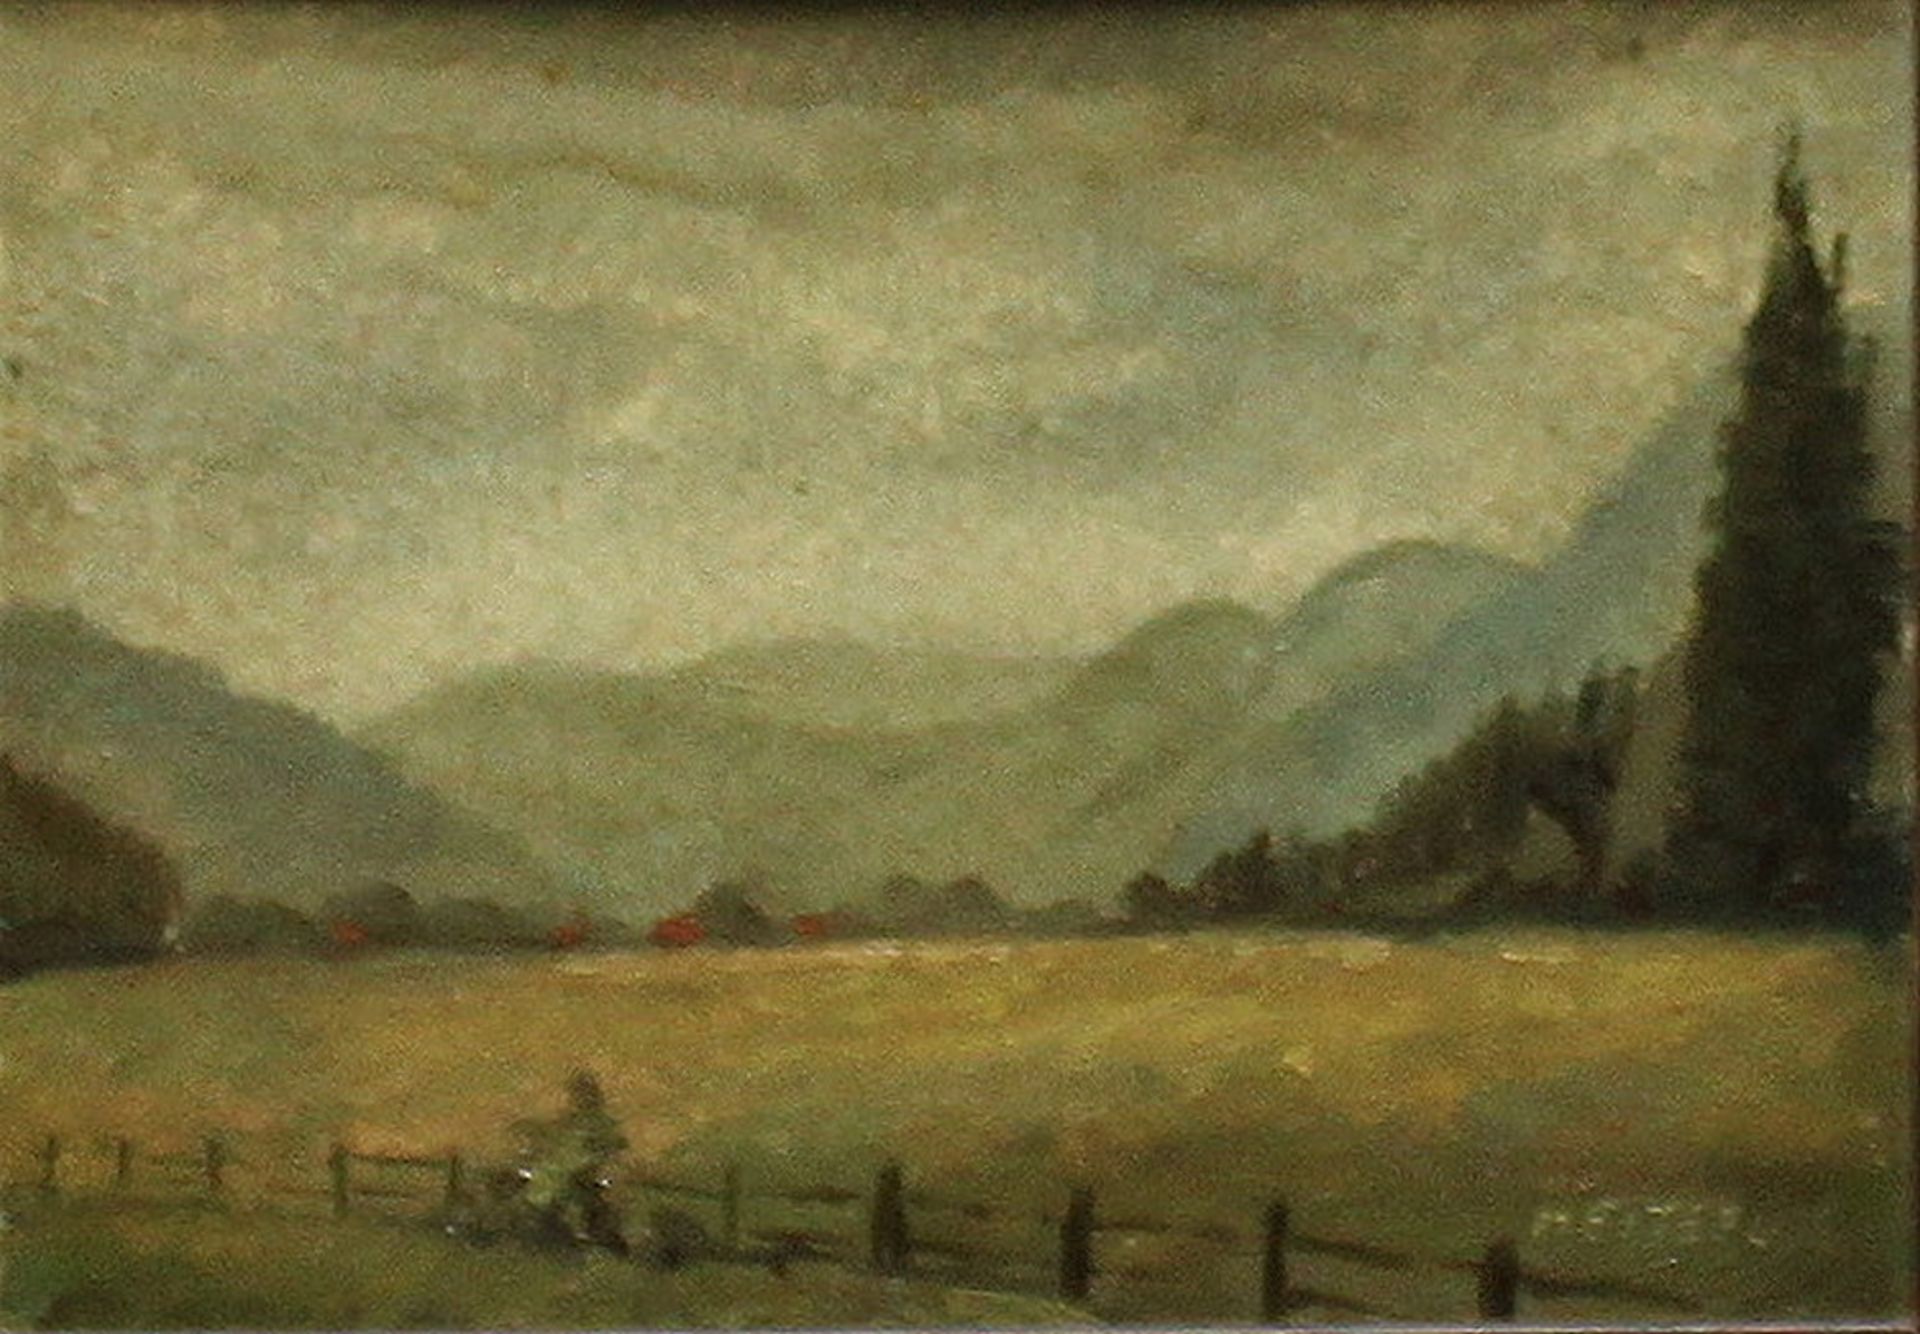 Heitefuss, Erich. “Selketal“ (im Harz). Ölmalerei (Mischtechnik) auf dünner Malpappe. Unten rechts